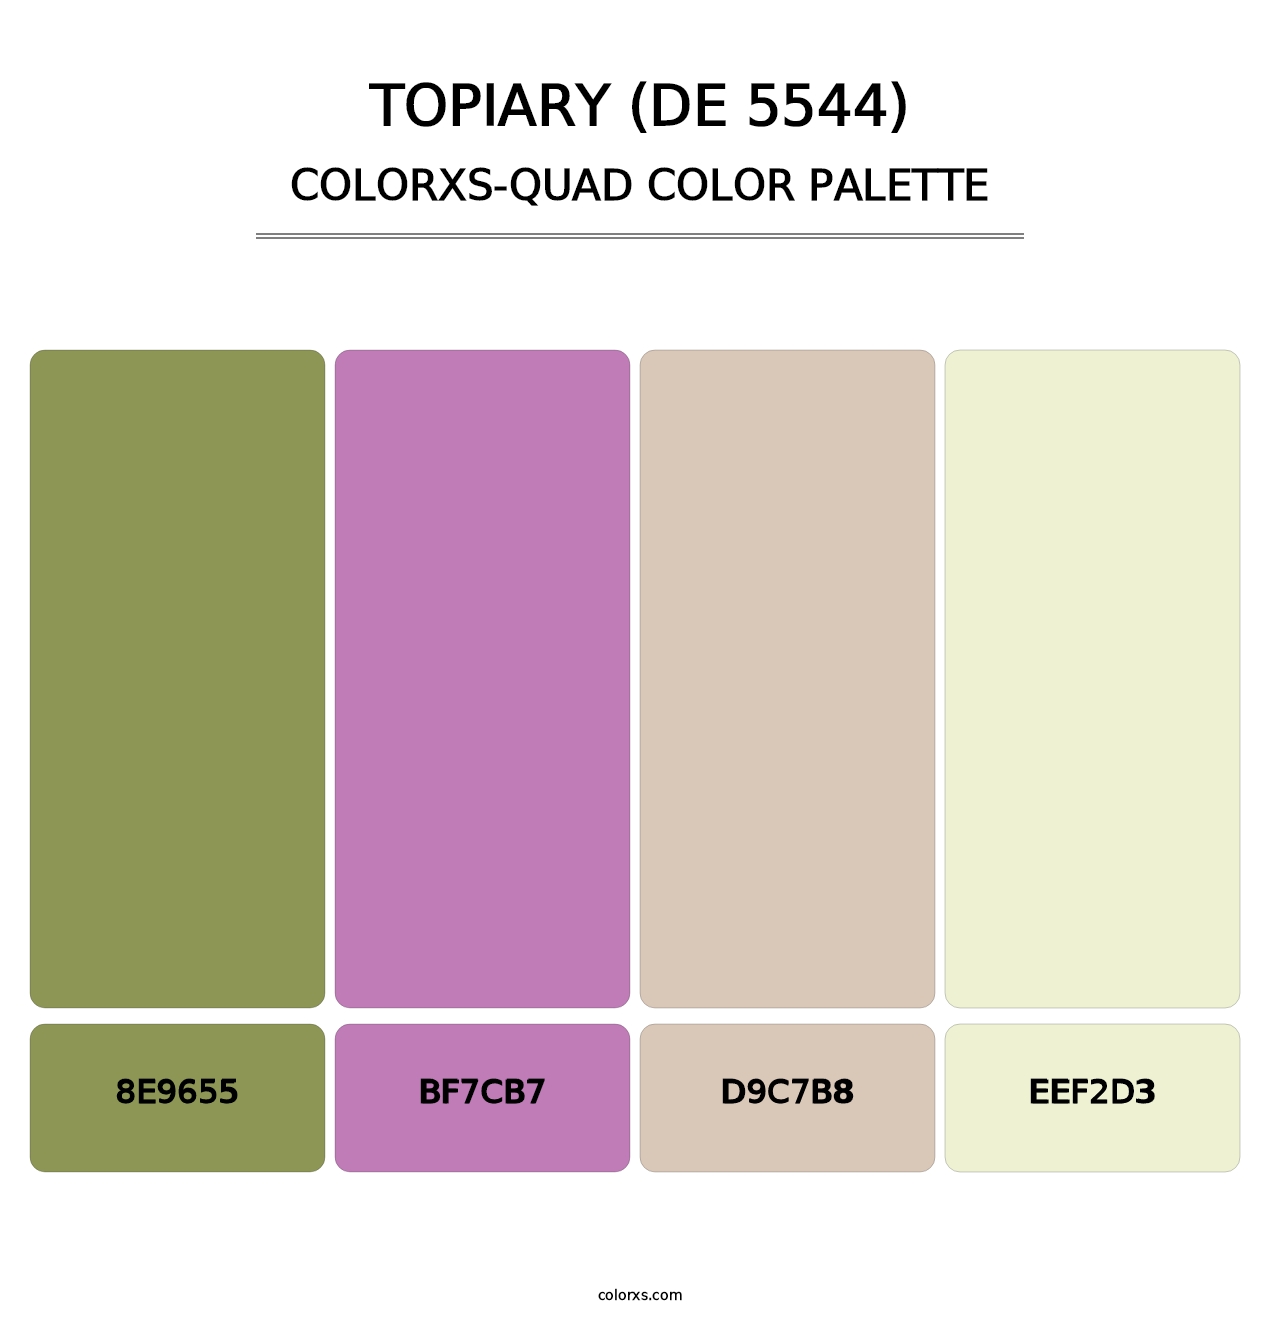 Topiary (DE 5544) - Colorxs Quad Palette